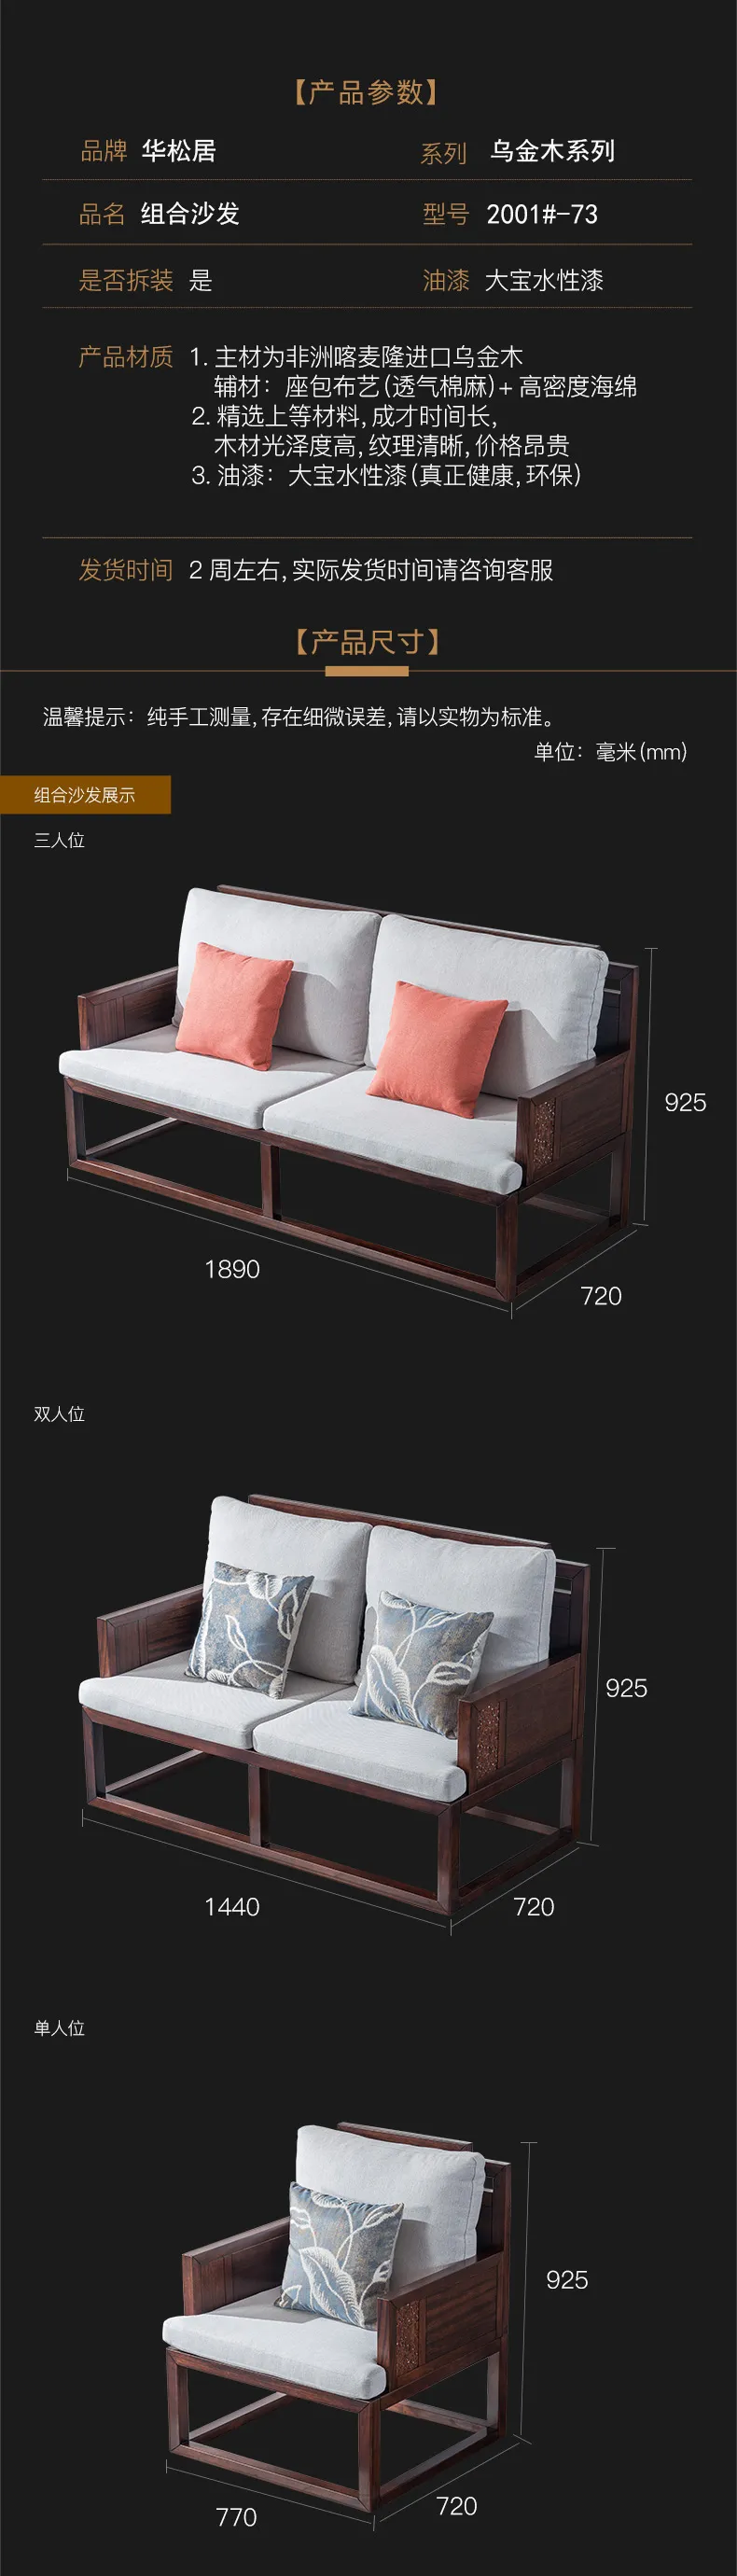 华松居 新中式乌金木大户型客厅家具全实木布艺组合沙发 #2001(图2)